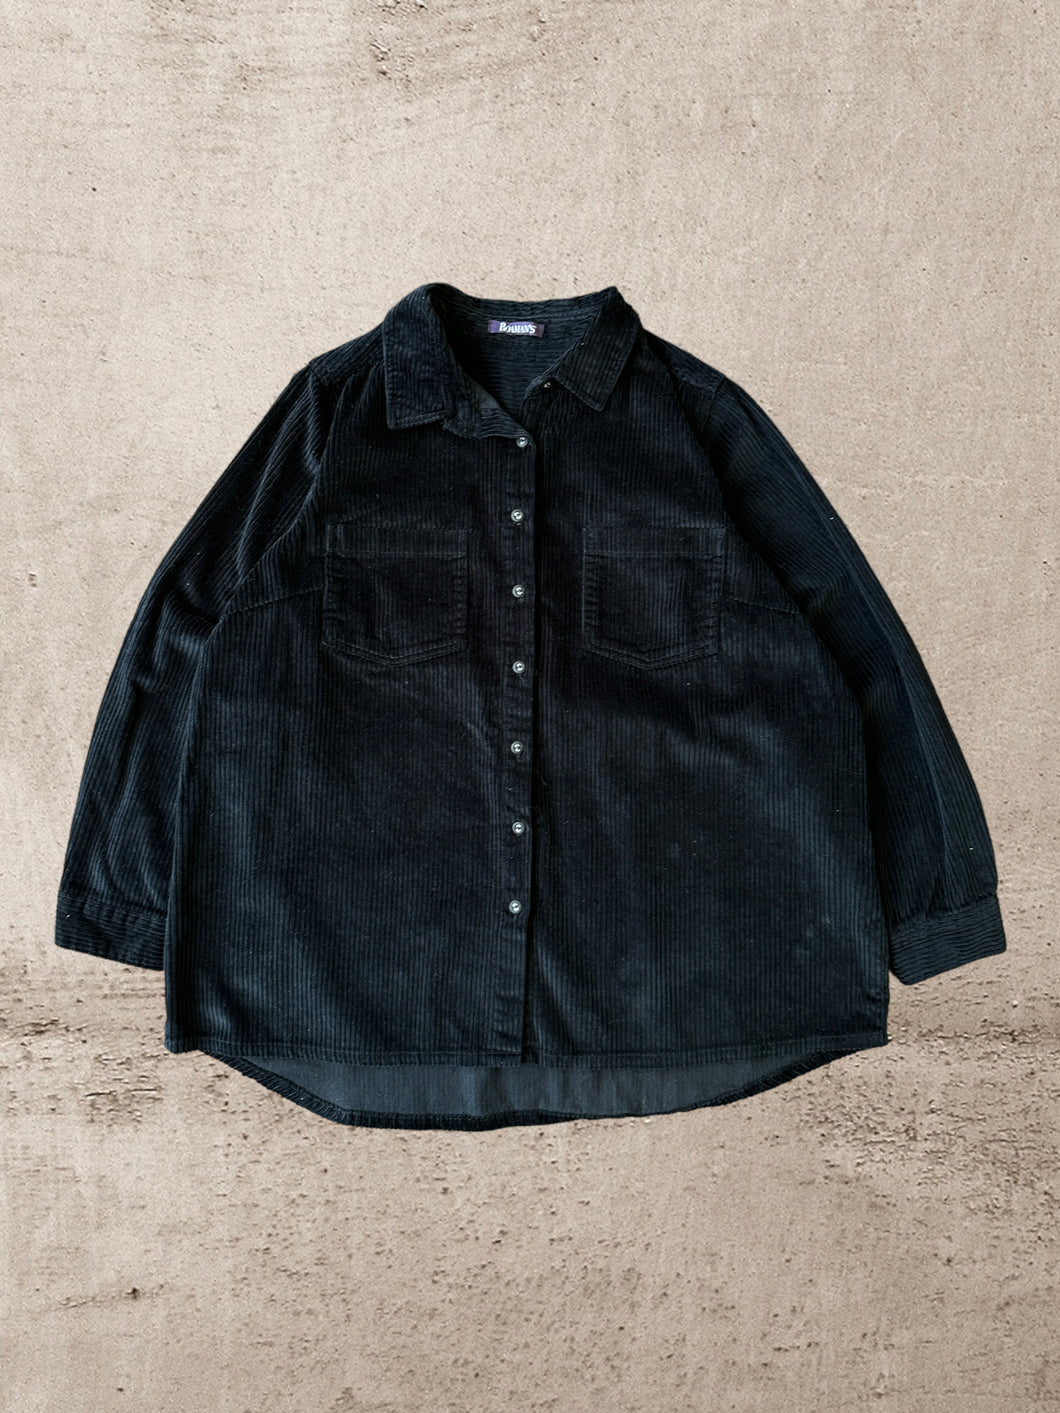 Vintage Black Corduroy Button Up - Large